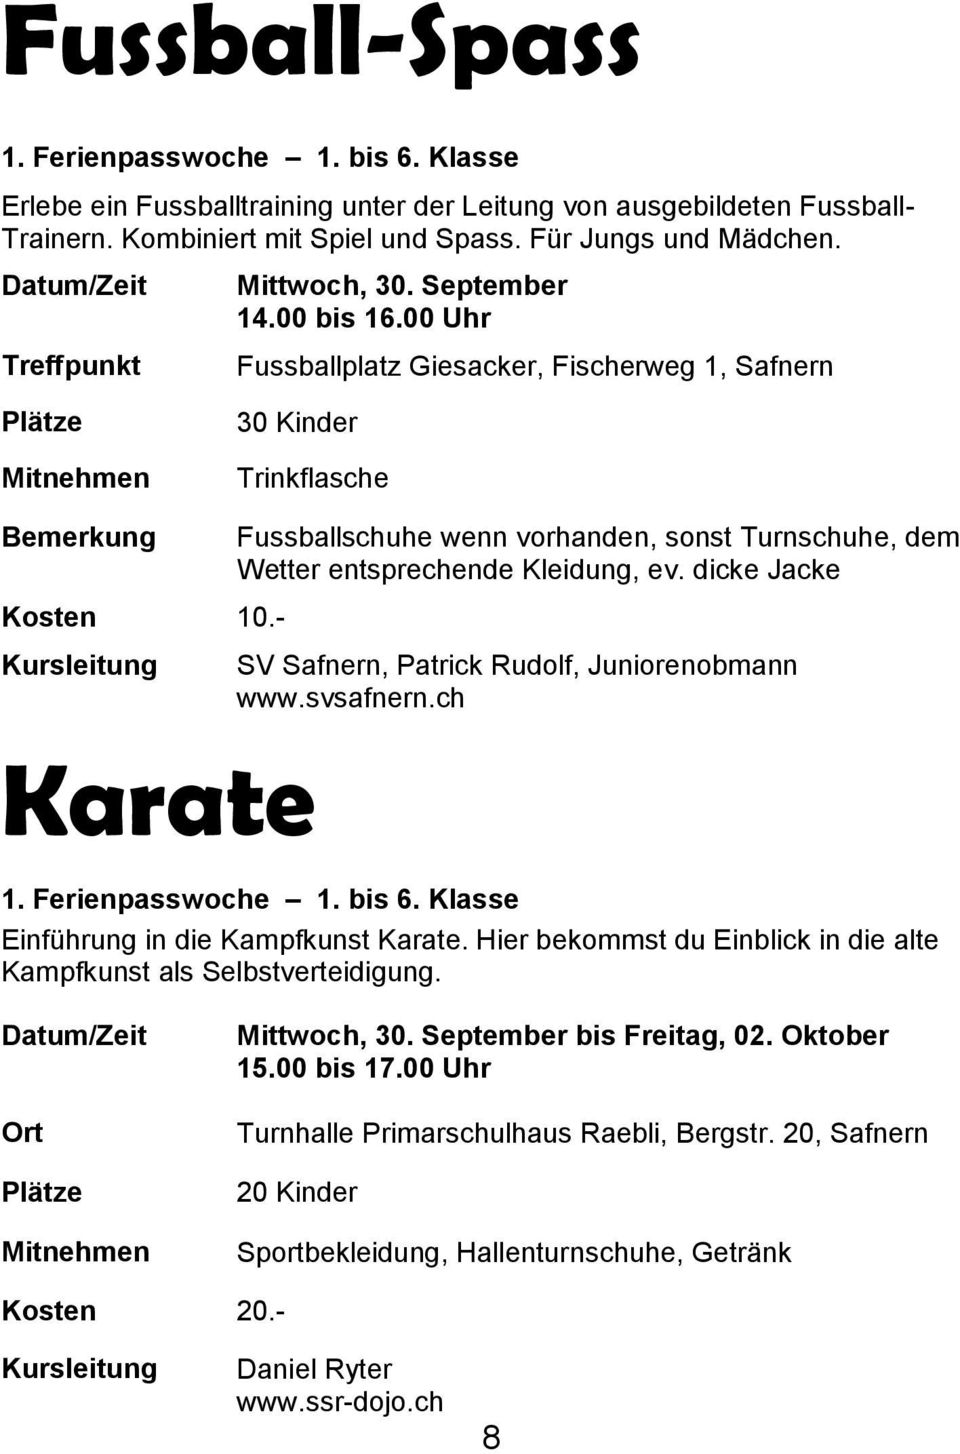 - Karate Fussballschuhe wenn vorhanden, sonst Turnschuhe, dem Wetter entsprechende Kleidung, ev. dicke Jacke SV Safnern, Patrick Rudolf, Juniorenobmann www.svsafnern.ch 1. Ferienpasswoche 1. bis 6.